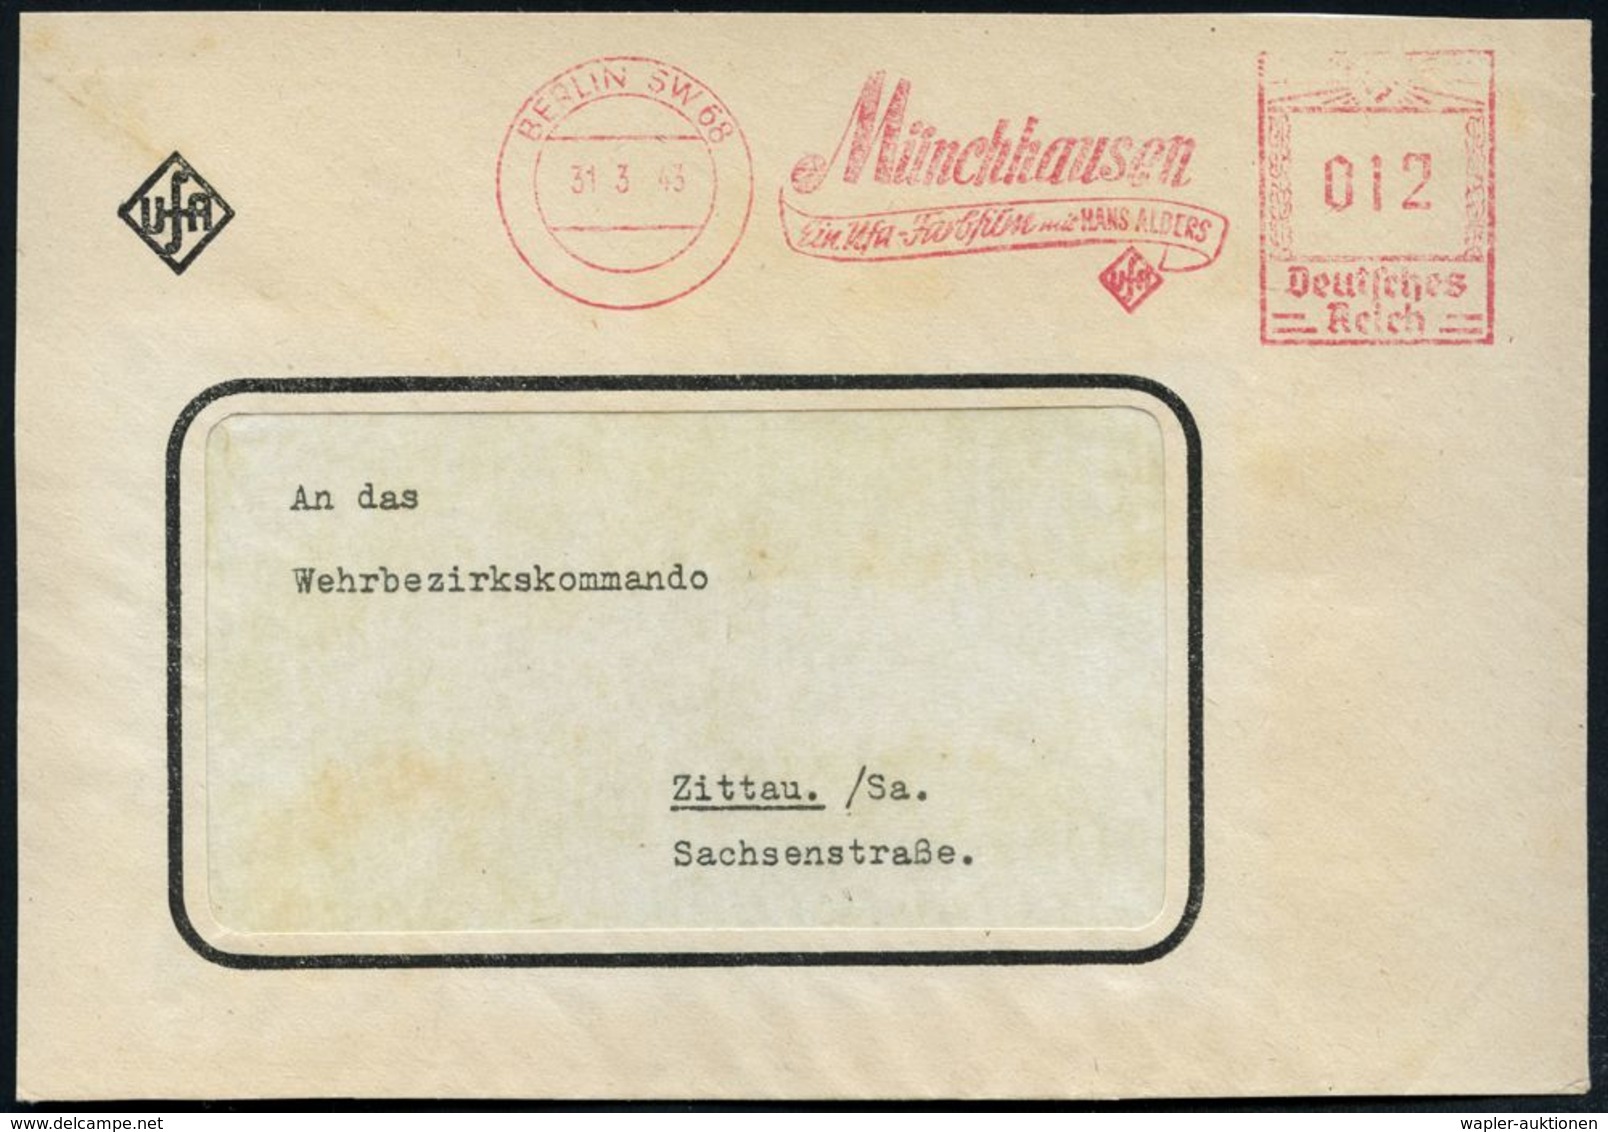 DEUTSCHSPRACHIGE DICHTER & LITERATUR : BERLIN SW 68/ Münchhausen/ Ein Ufa-Farbfilm Mit HANS ALBERS 1943 (31.3.) Sehr Sel - Schriftsteller